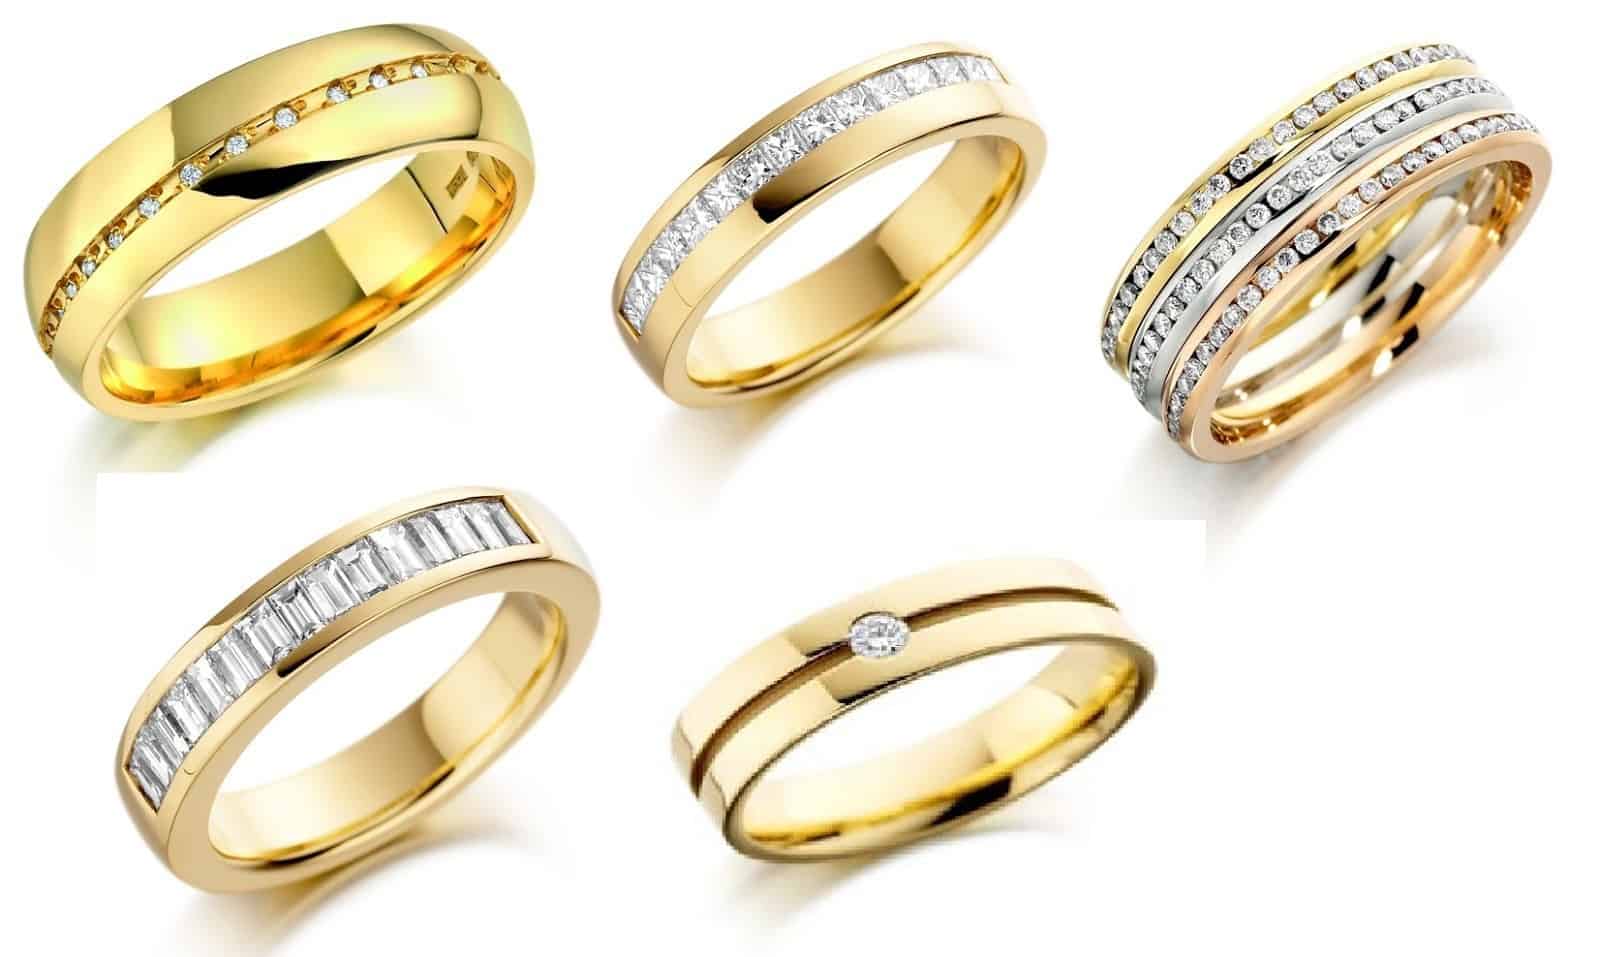 Svajonės apie dviejų auksinių žiedų nešiojimą nėščiai moteriai aiškinimas